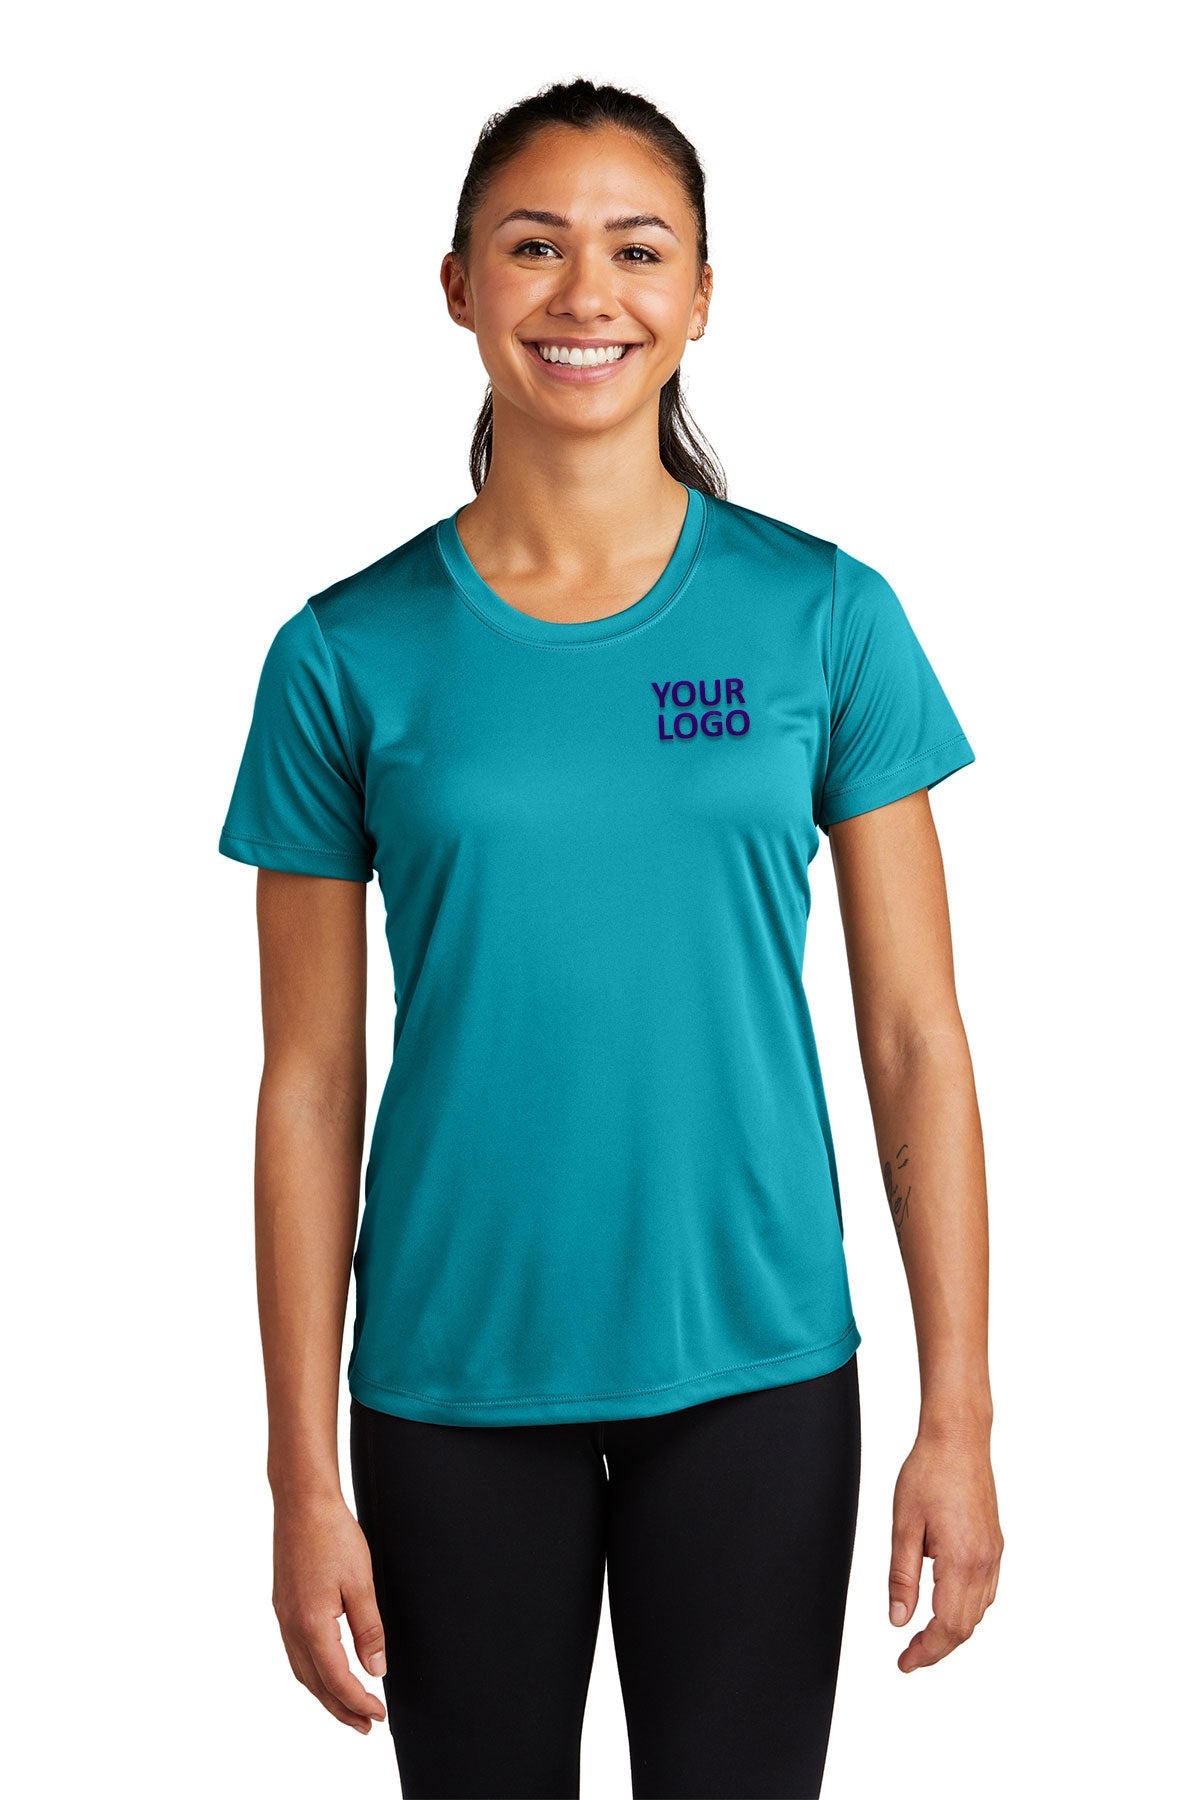 Sport-Tek Ladies PosiCharge Branded Competitor Tee's, Tropic Blue